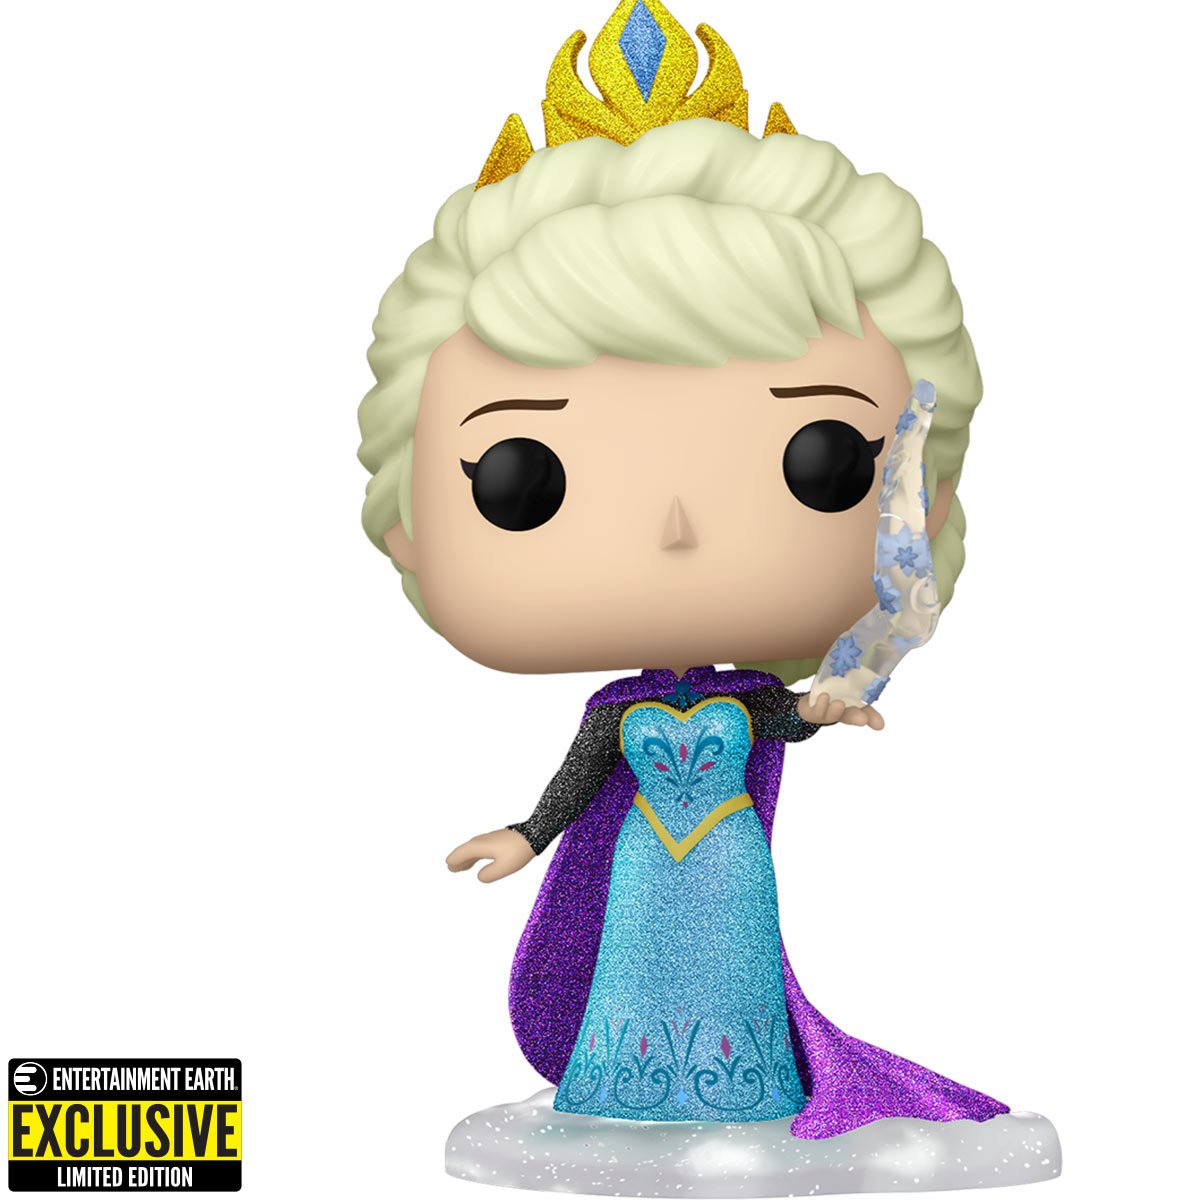 Frozen II - Elsa in Epilogue Dress - POP! Disney action figure 731